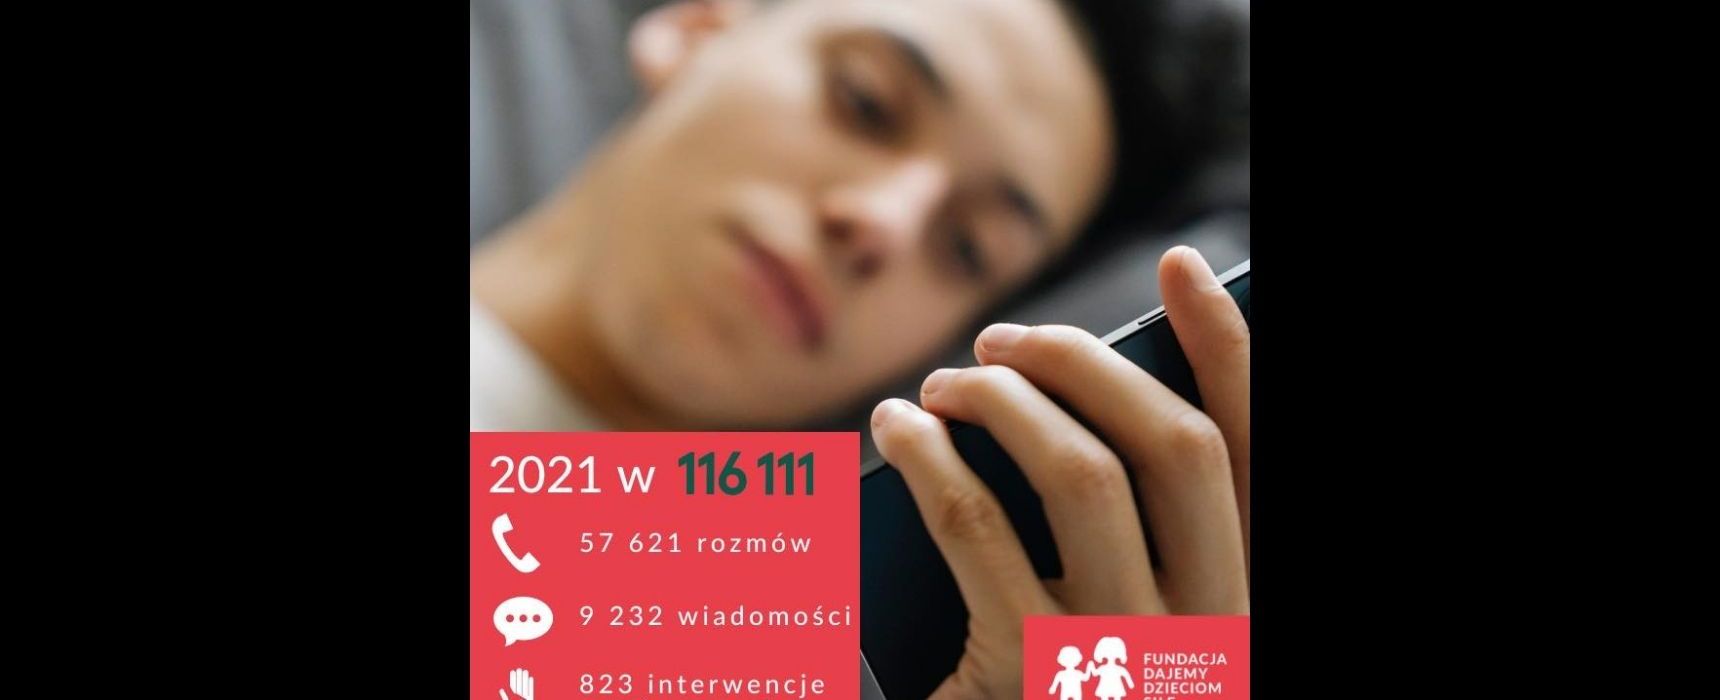 [czw. 17:00] Zbiórka funduszy na utrzymanie Telefonu Zaufania 116 111/ Halszka Witkowska